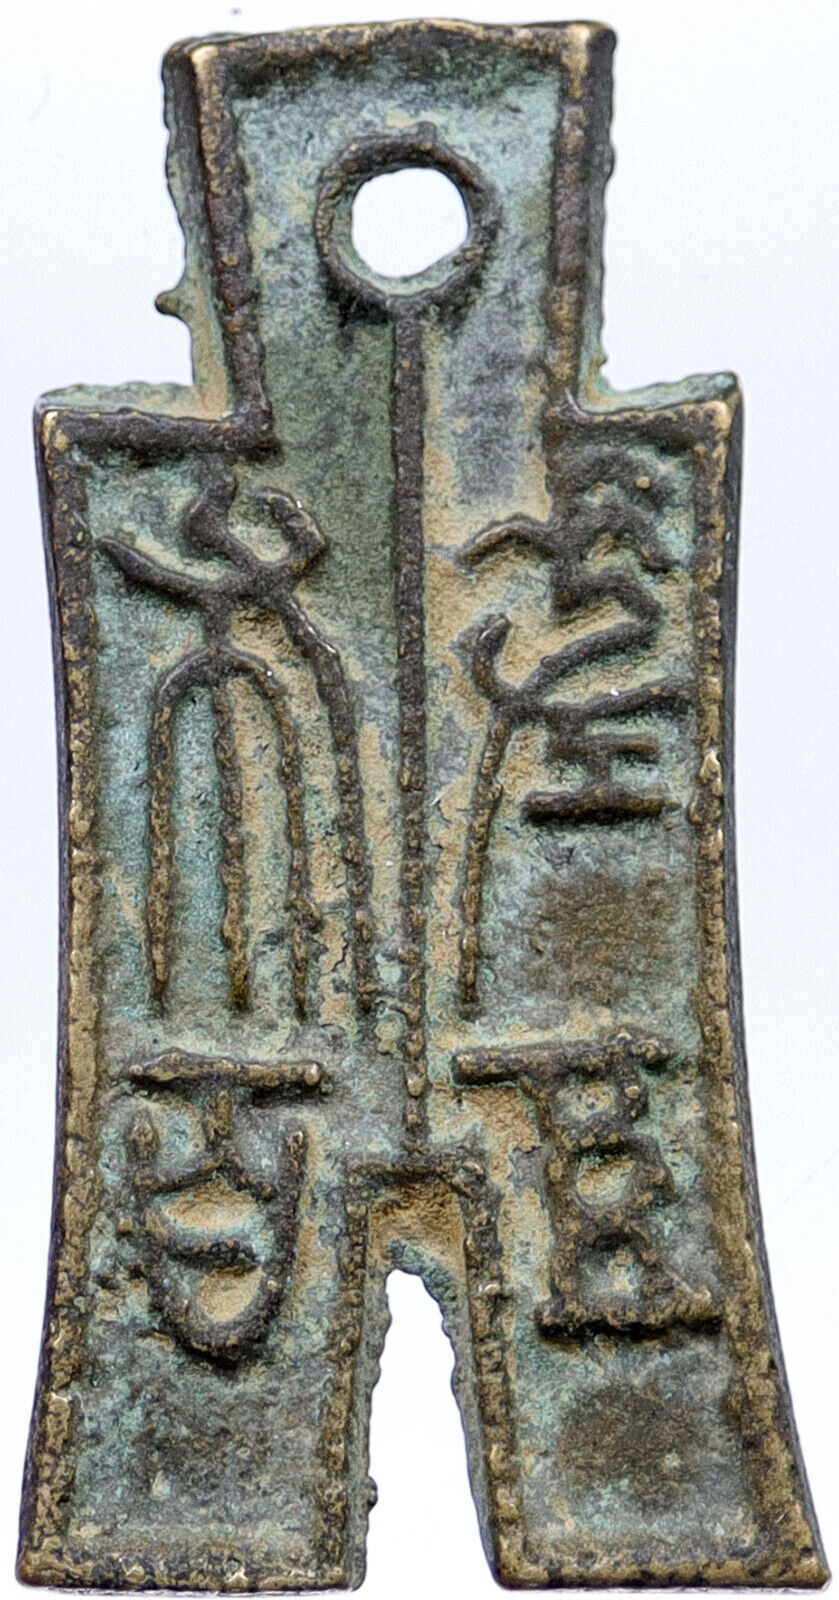 10-14 AD CHINA Xin Dynasty EMPEROR WANG MANG ANCIENT Spade Not Cash Coin i118866